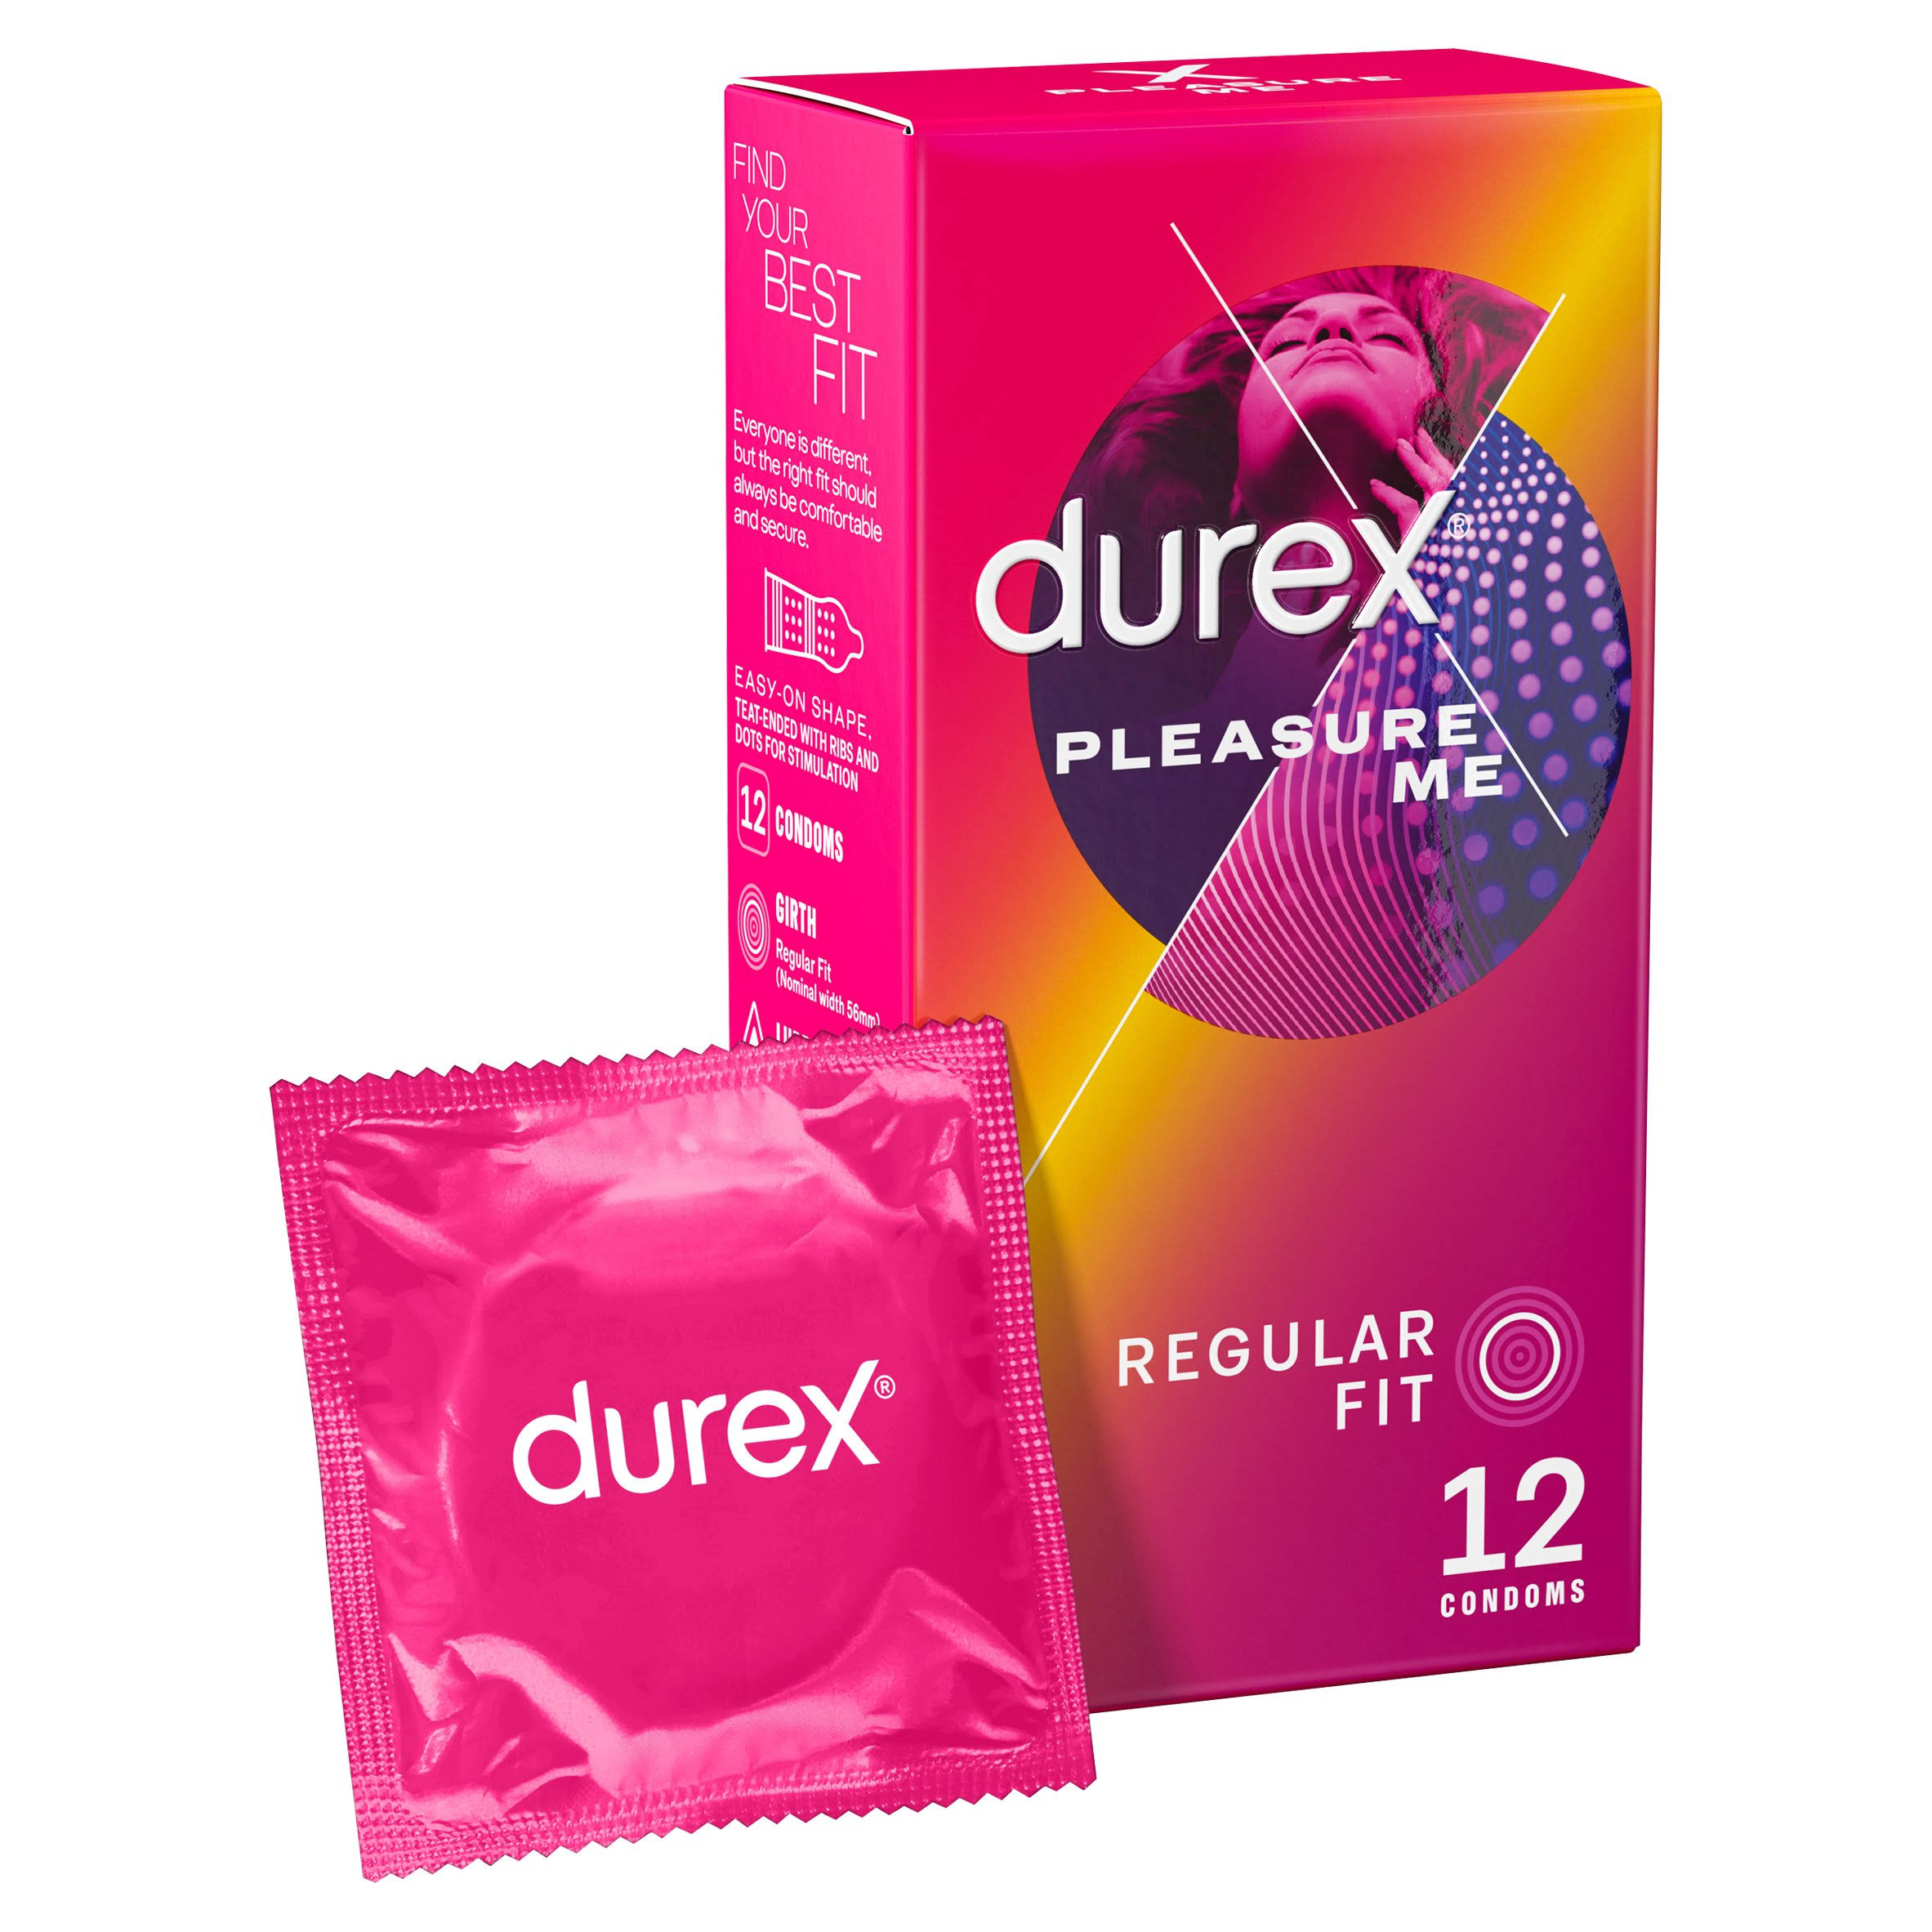 Durex Pleasure Me Condoms - 12pcs